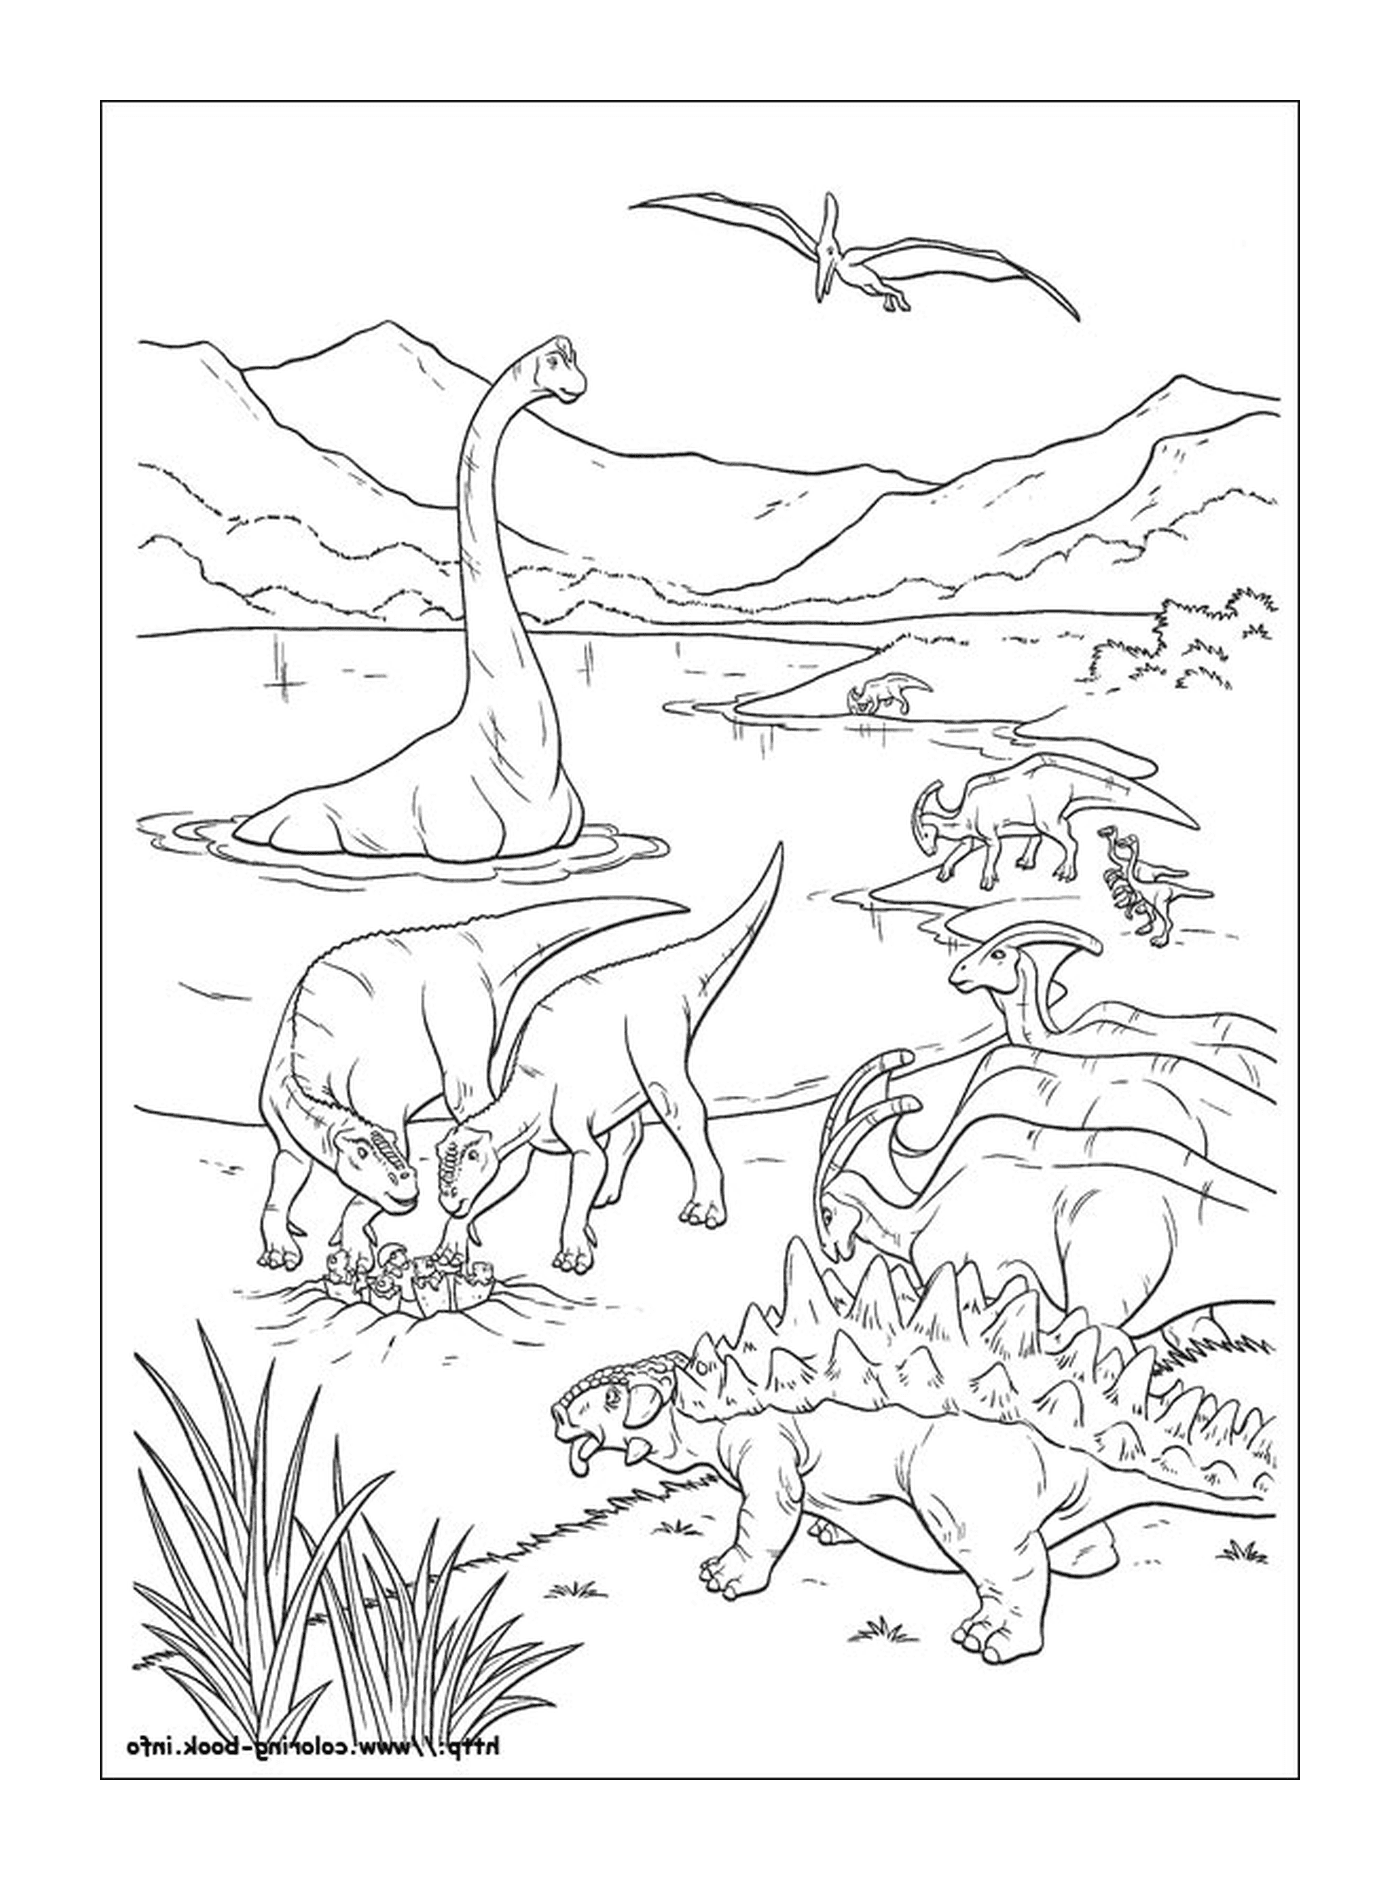  Группа динозавров в воде 